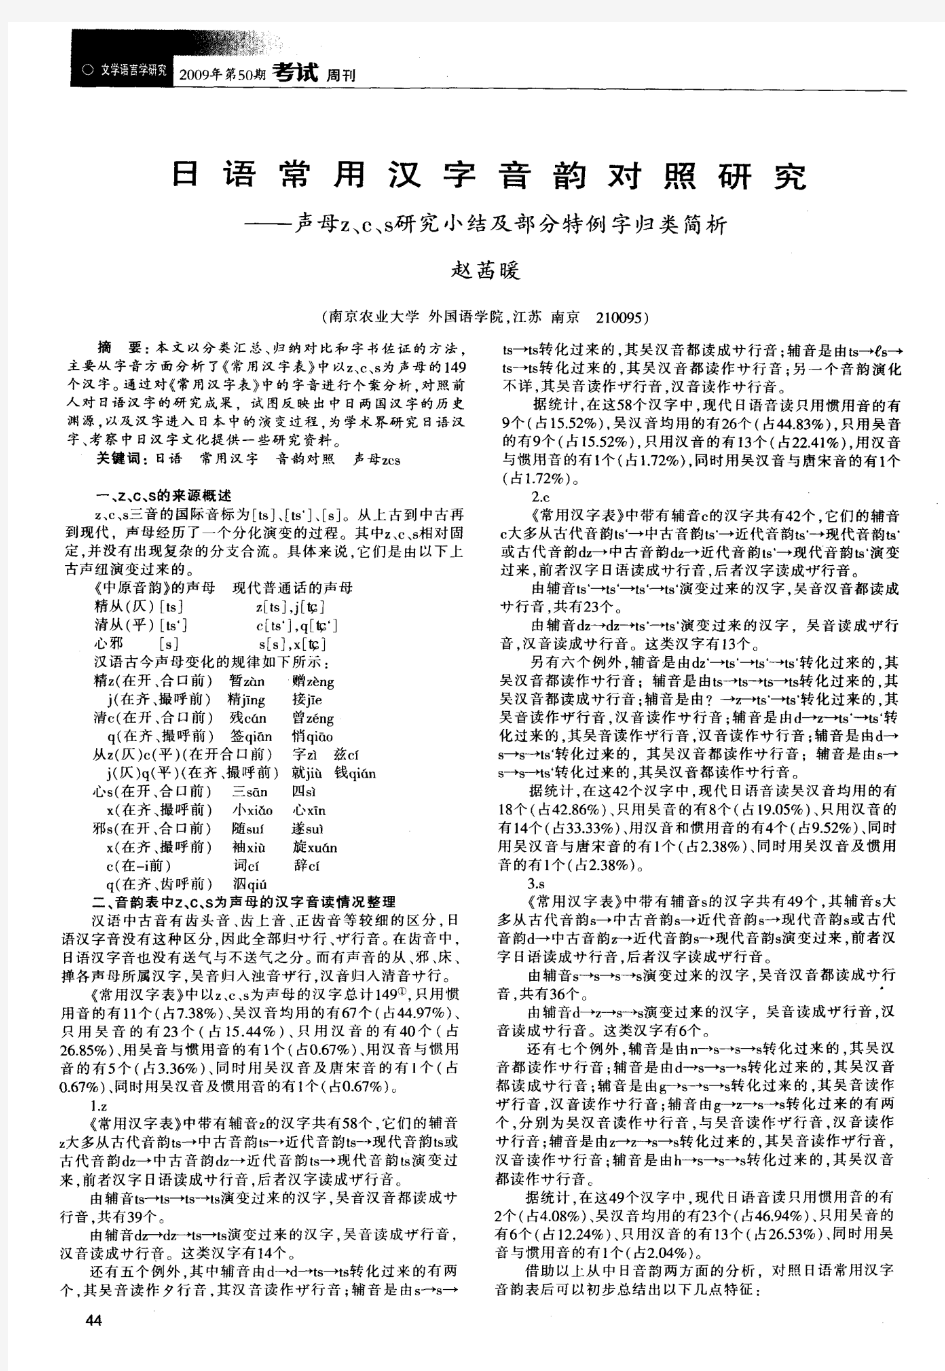 日语常用汉字音韵对照研究——声母z、c、s研究小结及部分特例字归类简析-论文